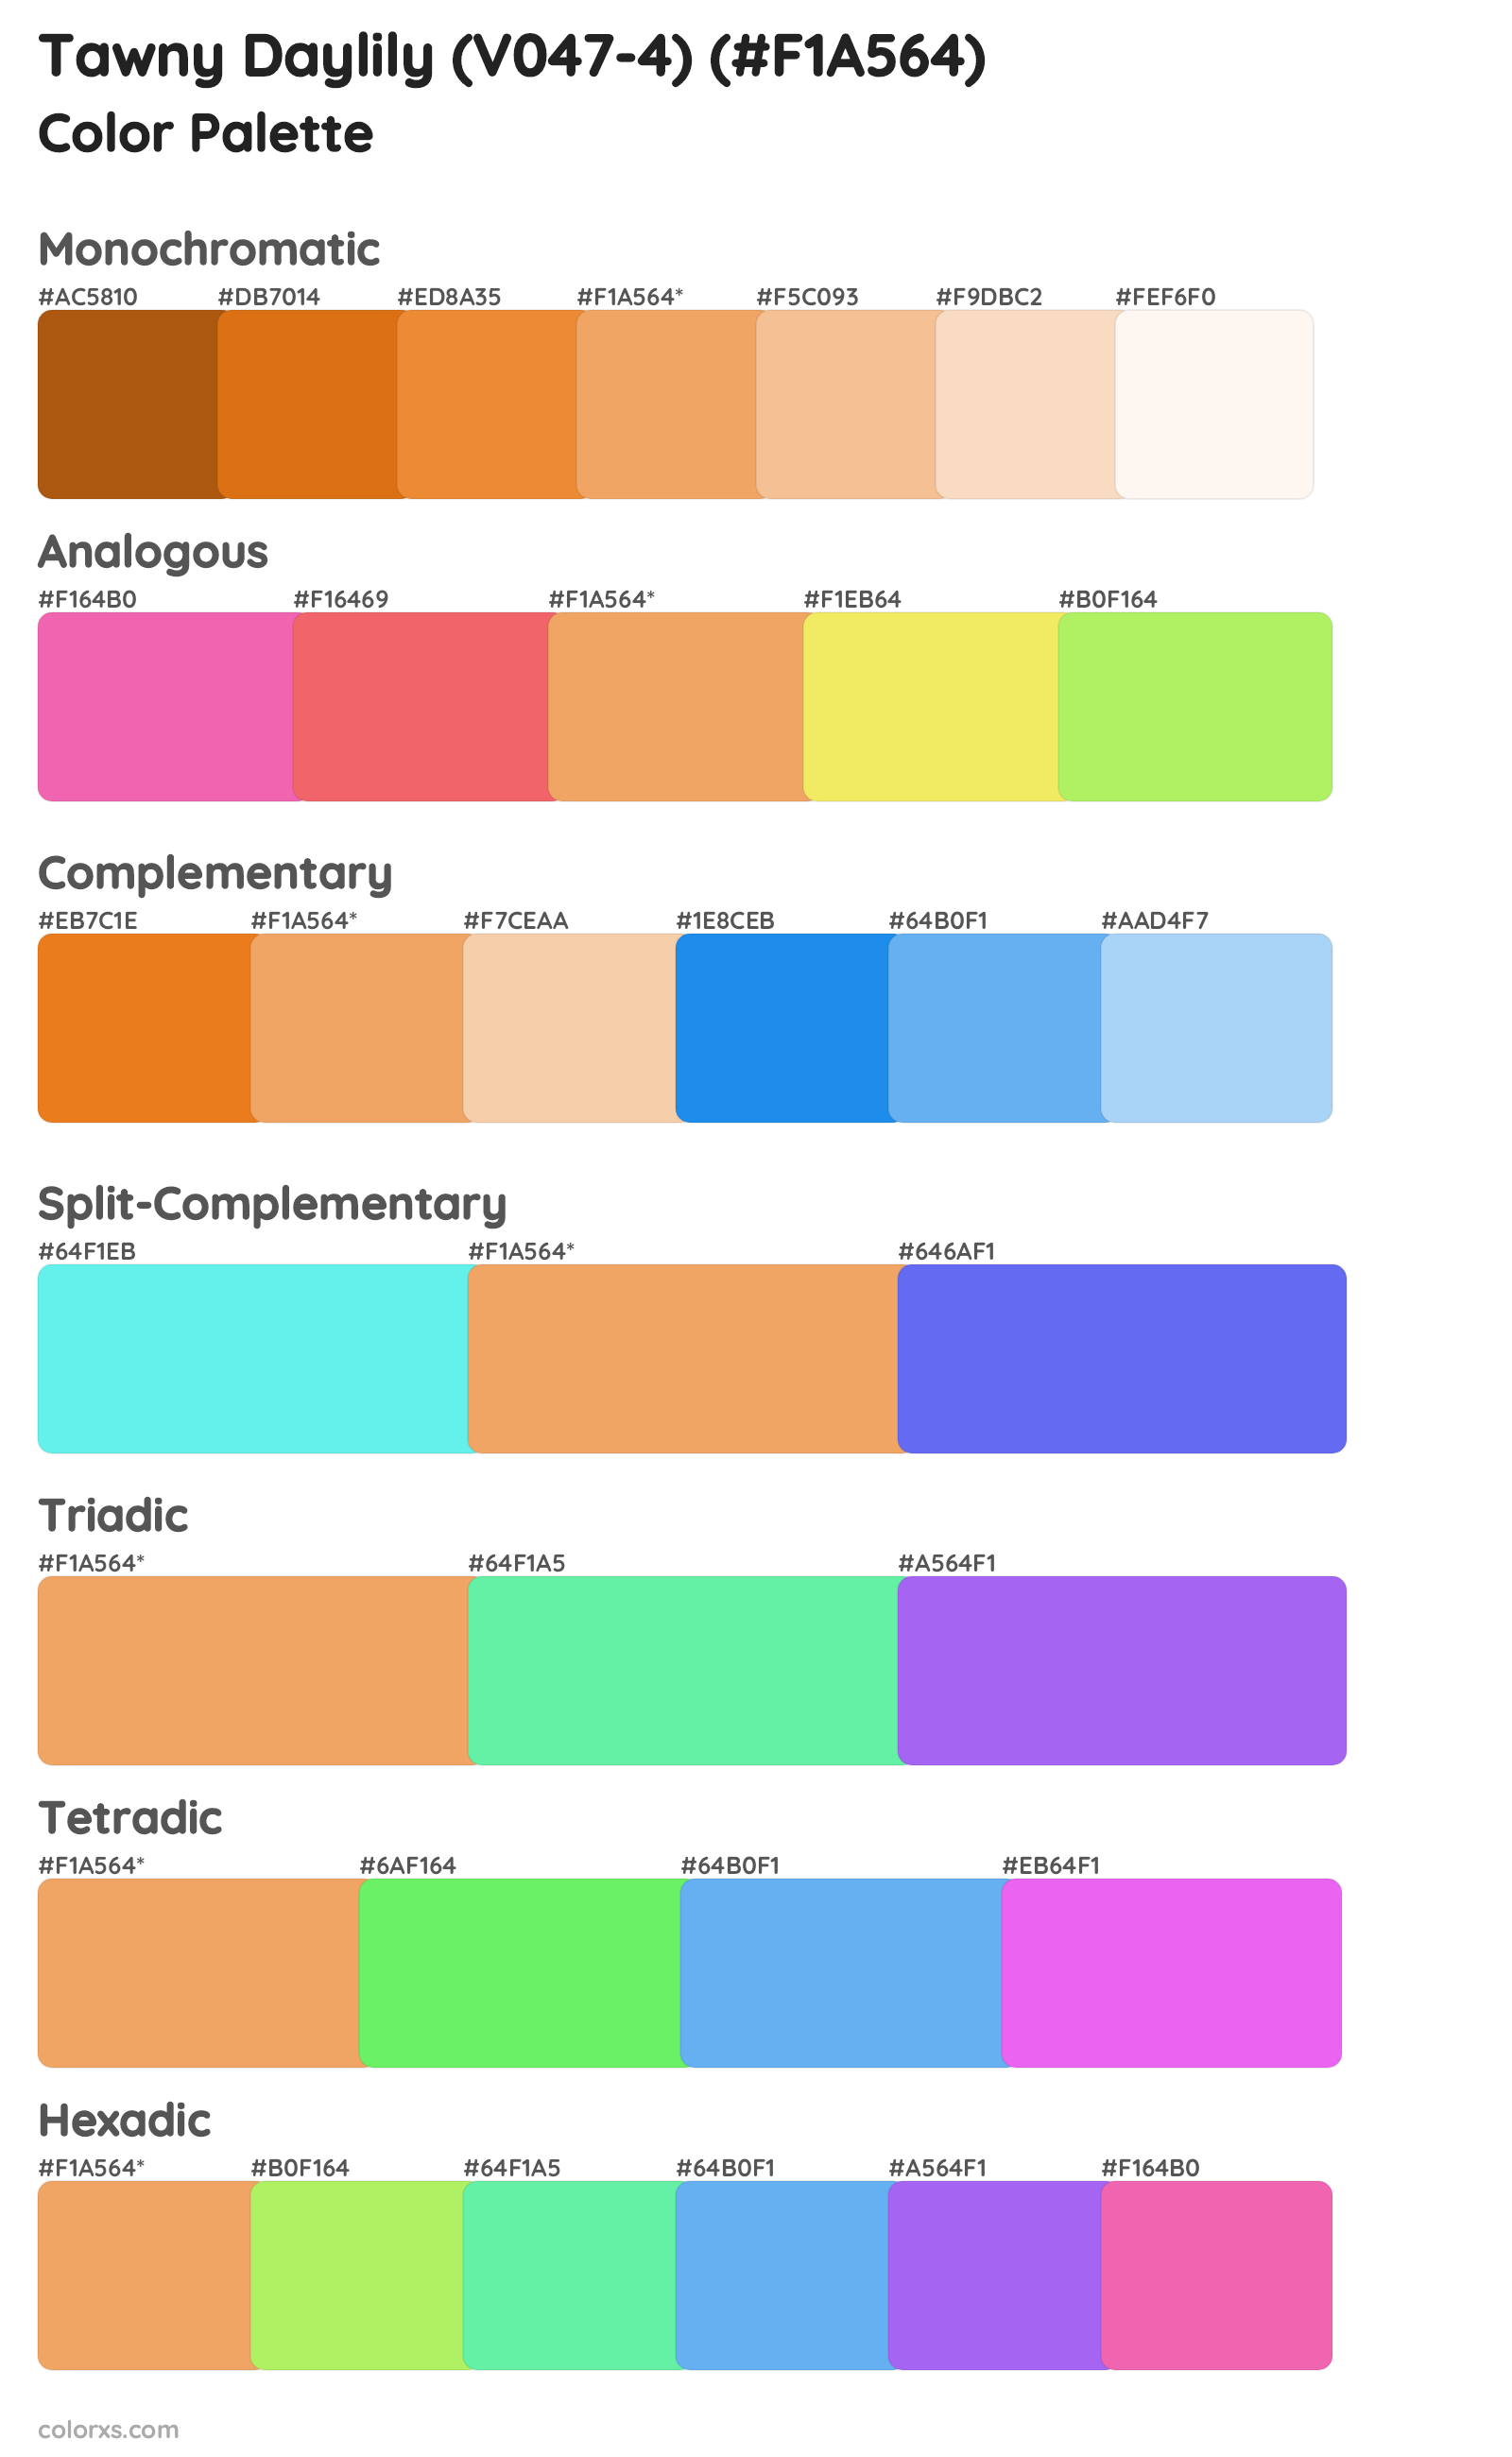 Tawny Daylily (V047-4) Color Scheme Palettes